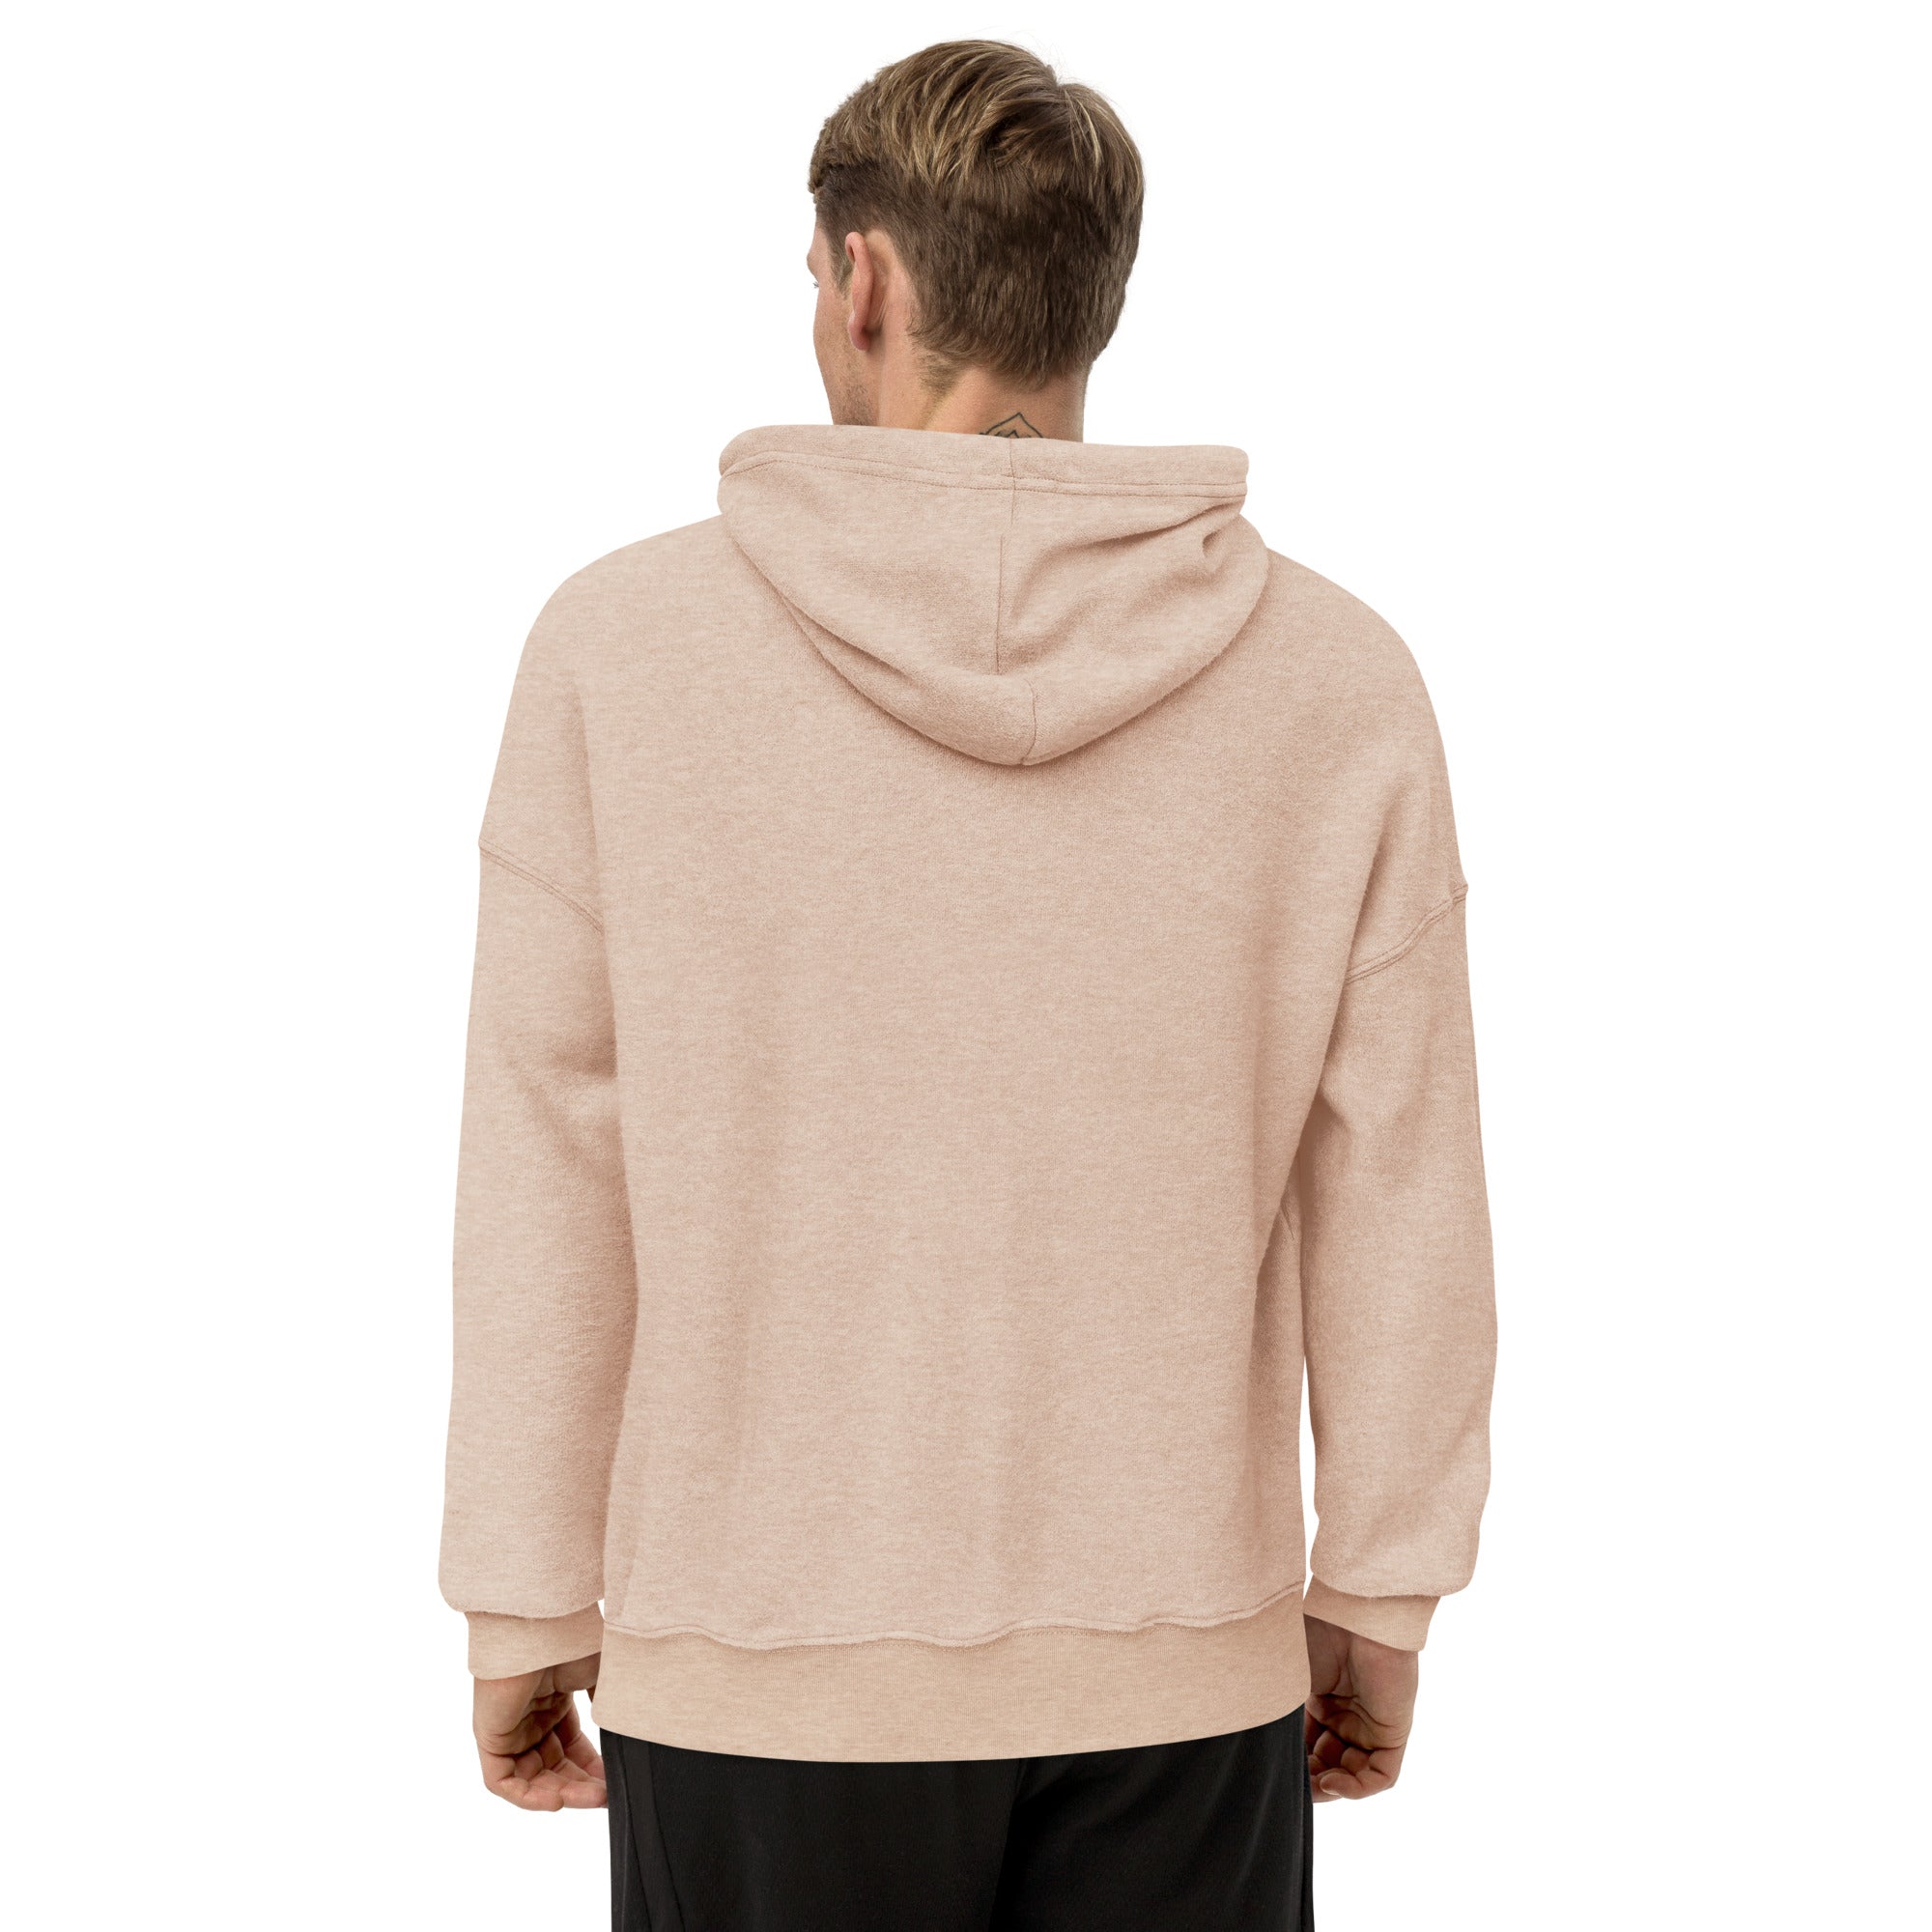 IVF daddy sweater men's sueded fleece hoodie - Young Hugs